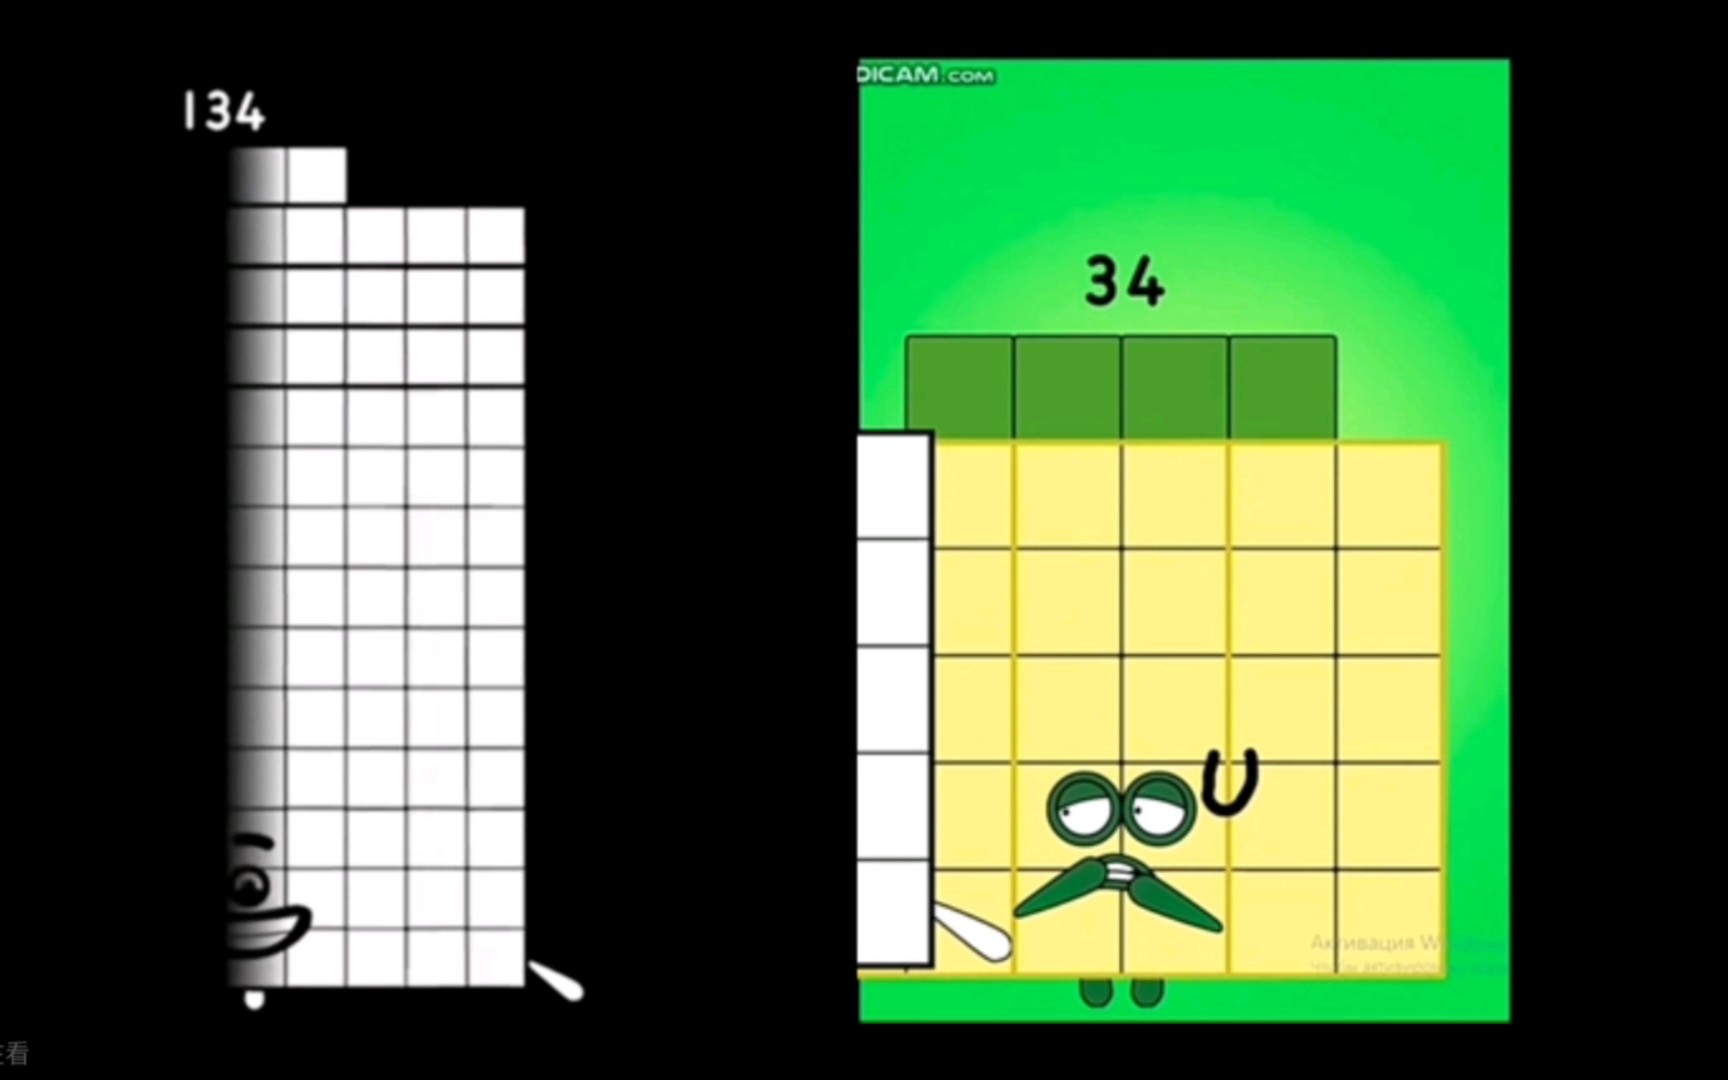 数字方块反向扭曲对比，但是不对劲（31-40